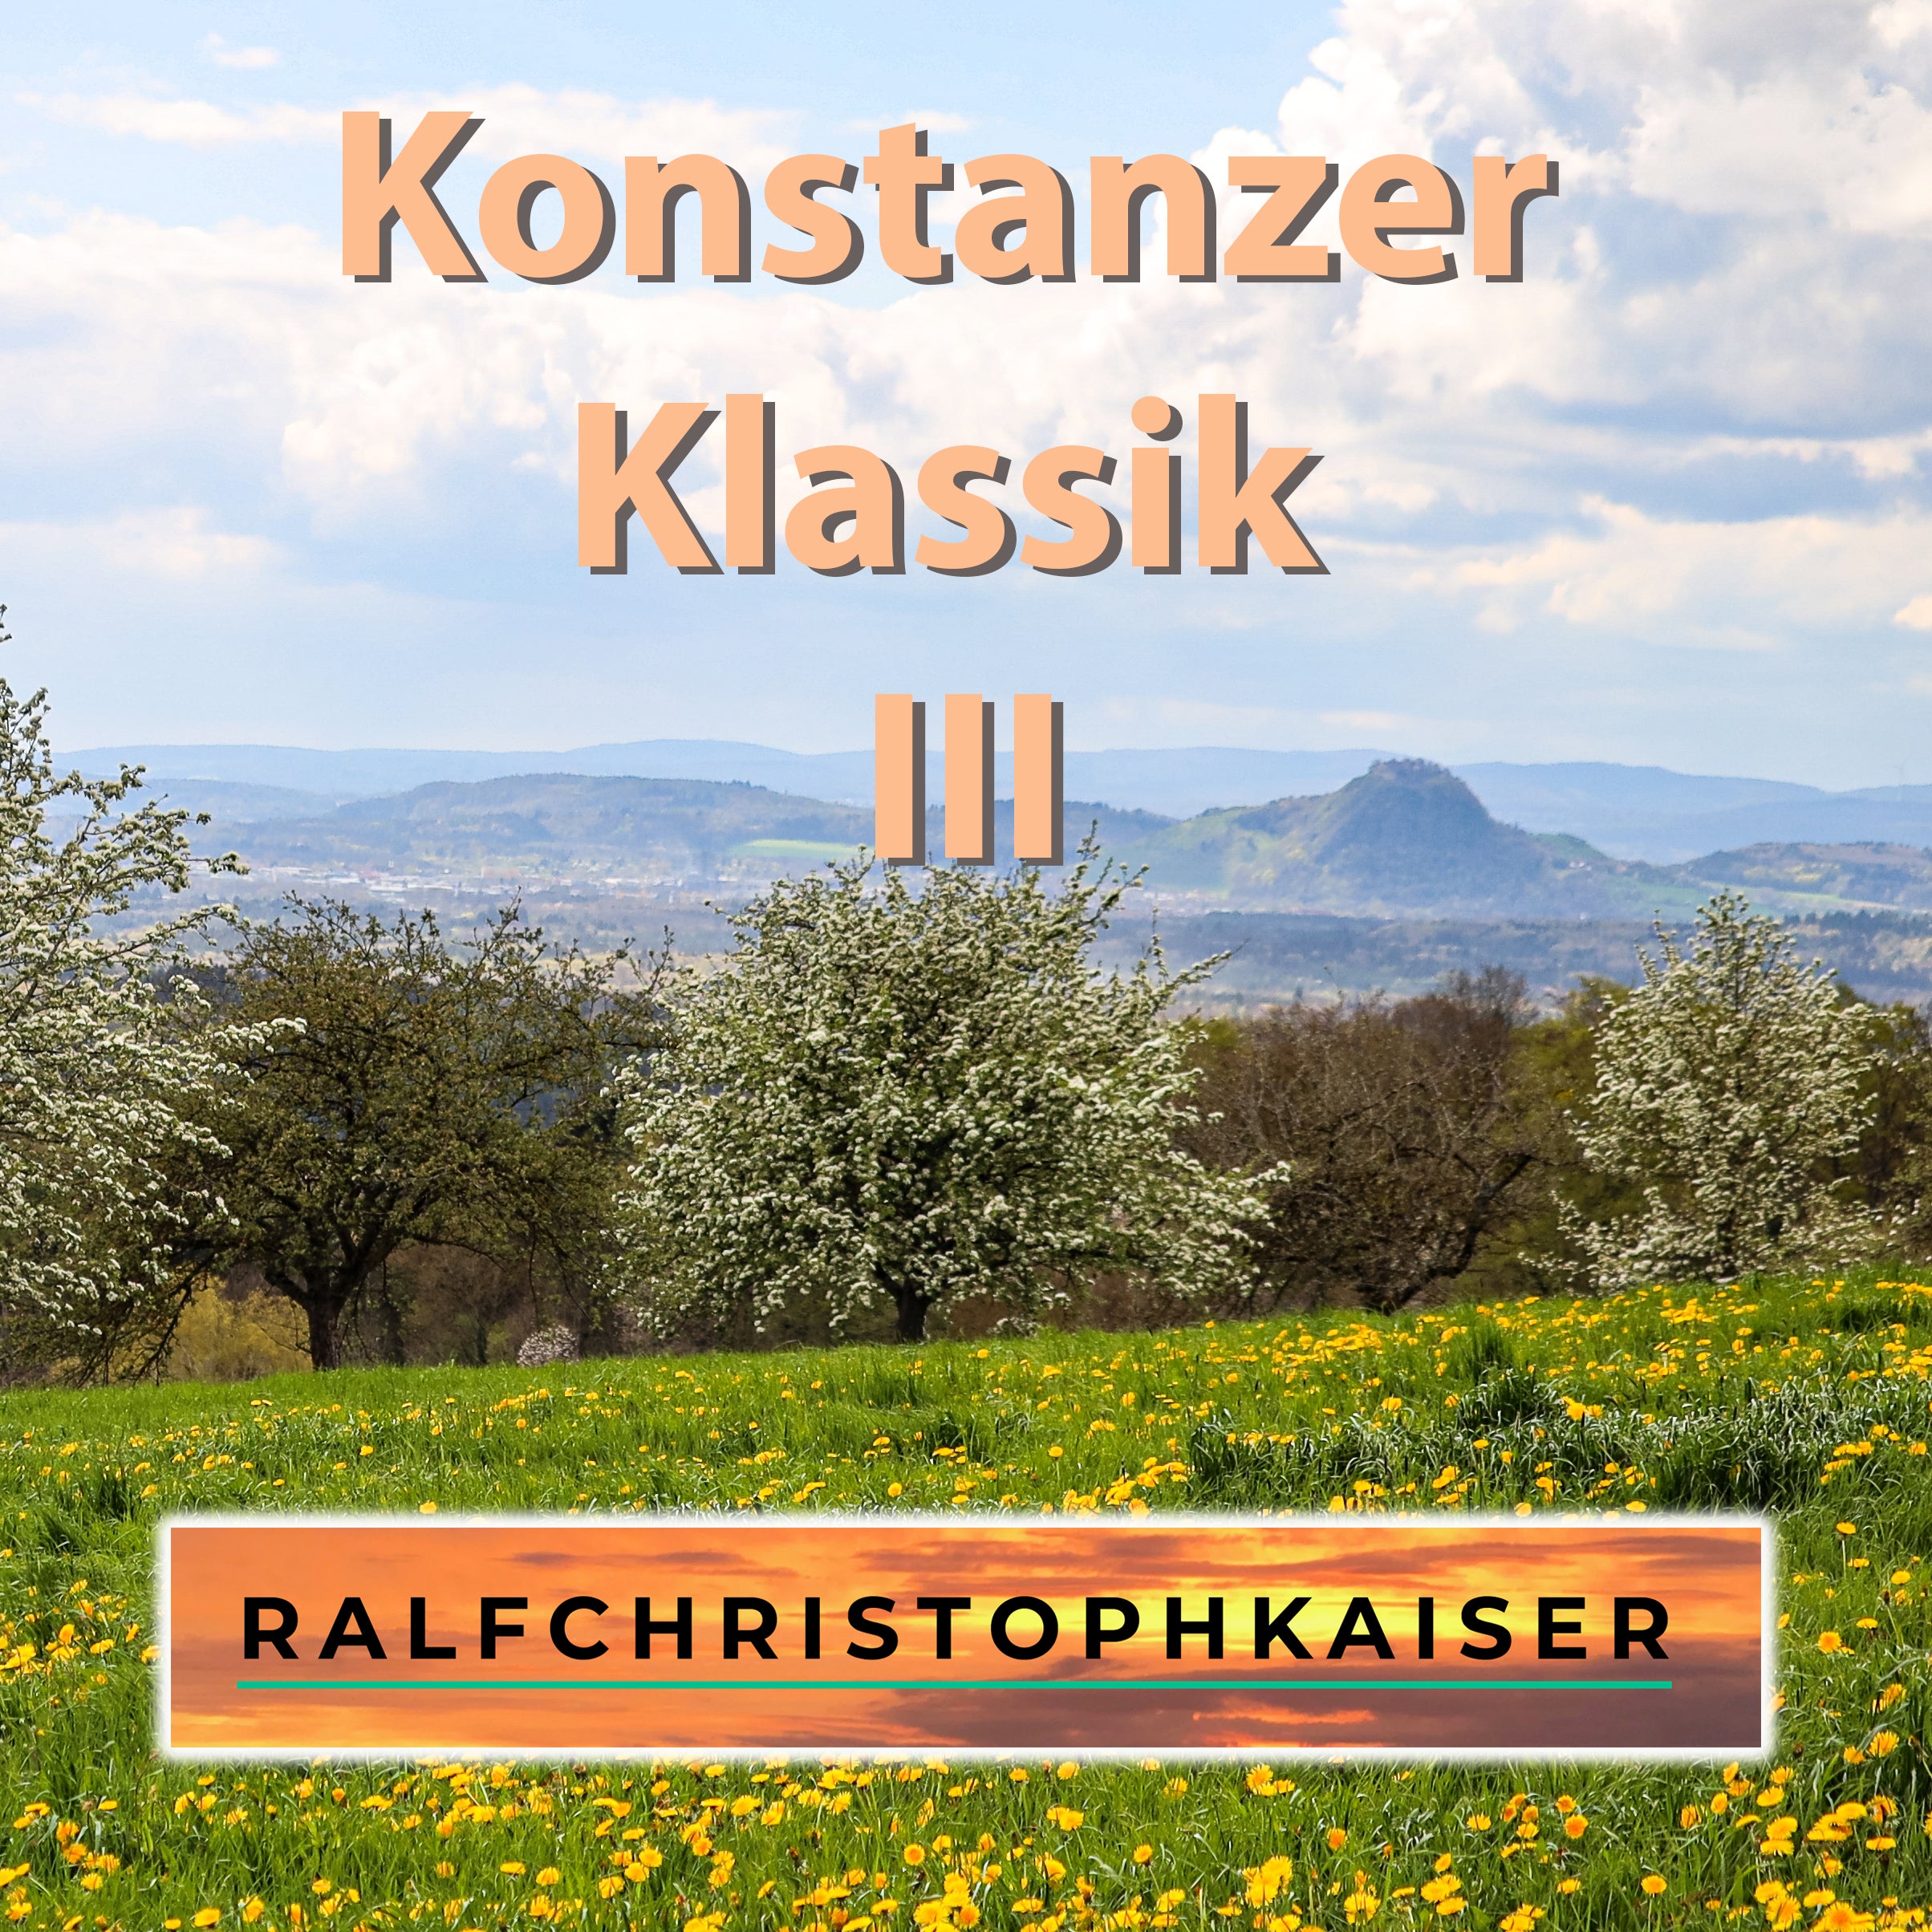 Konstanzer Klassik III il nuovo album classico con 10 brani sensazionali dal Lago di Costanza è ora disponibile con audio HD e spartiti per orchestra inclusi dati midi e immagini